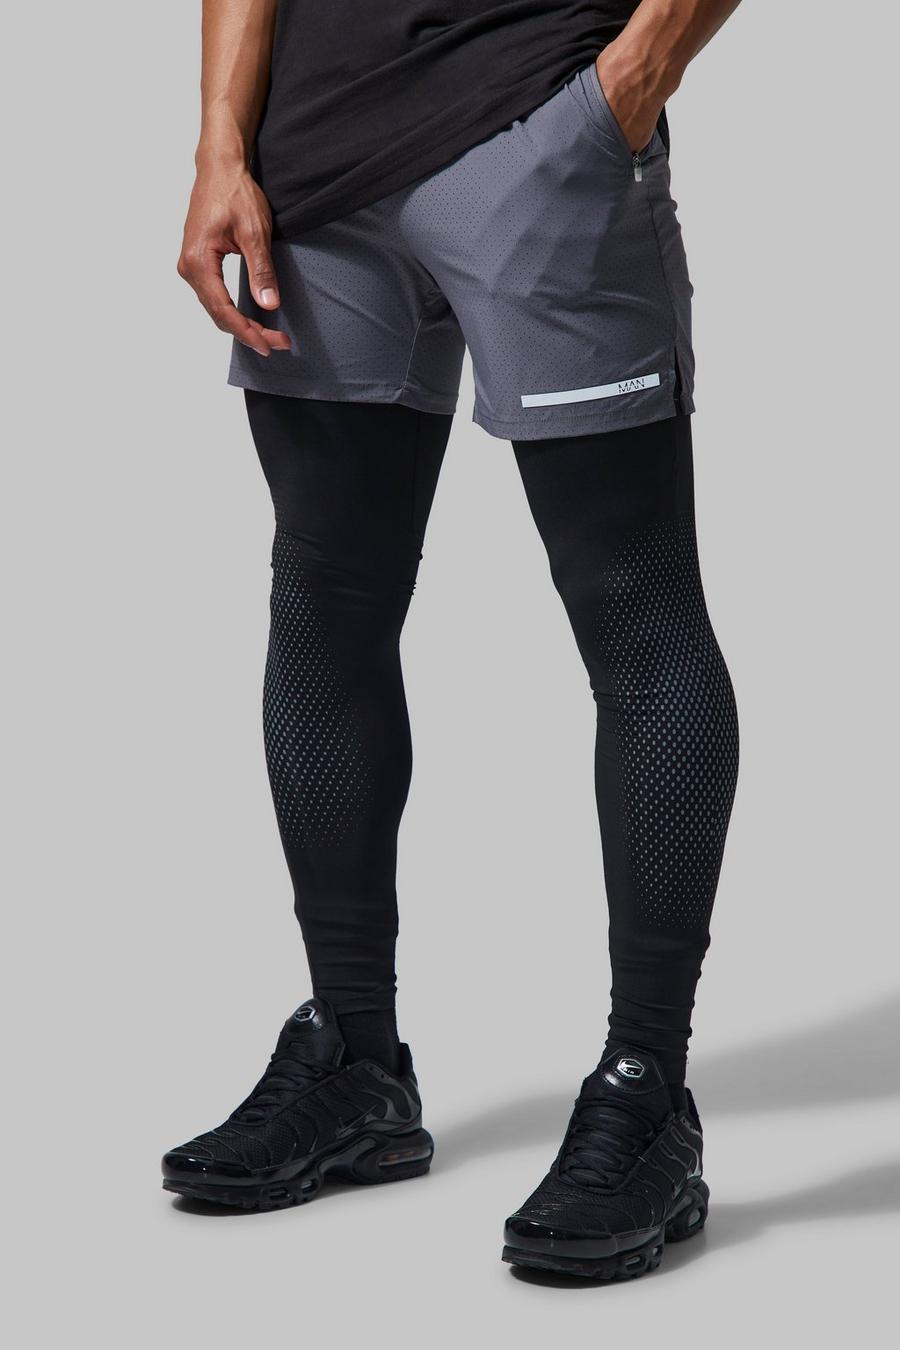 Legging 2 en 1 performance - MAN Active, Charcoal grey image number 1